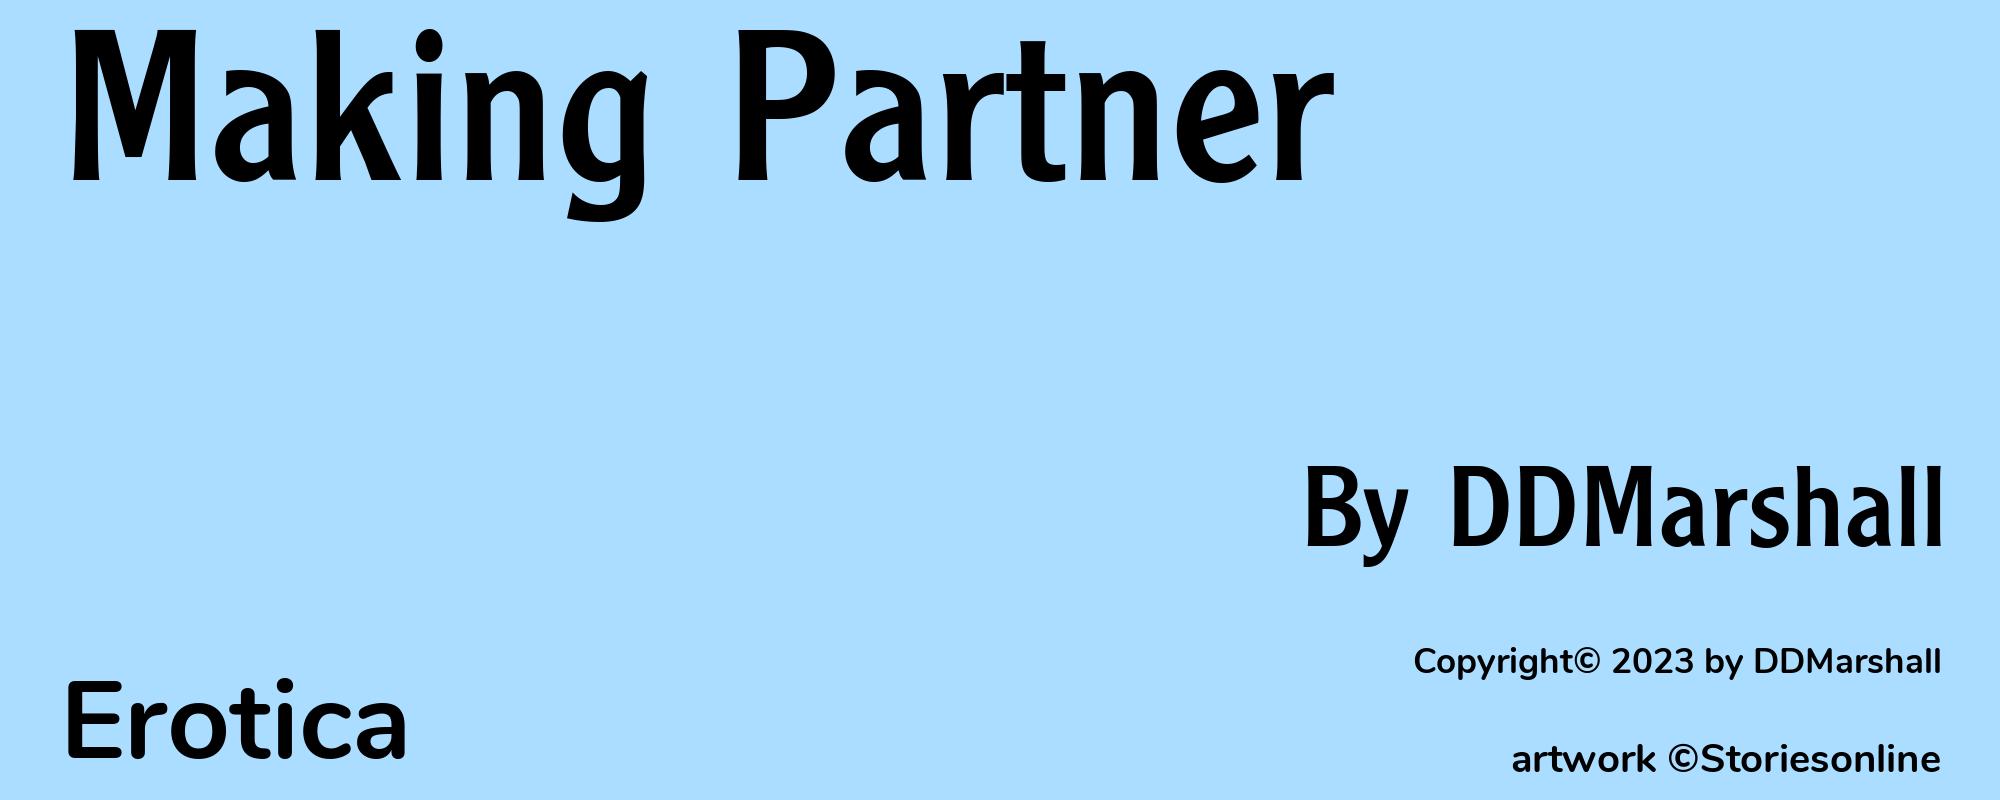 Making Partner - Cover